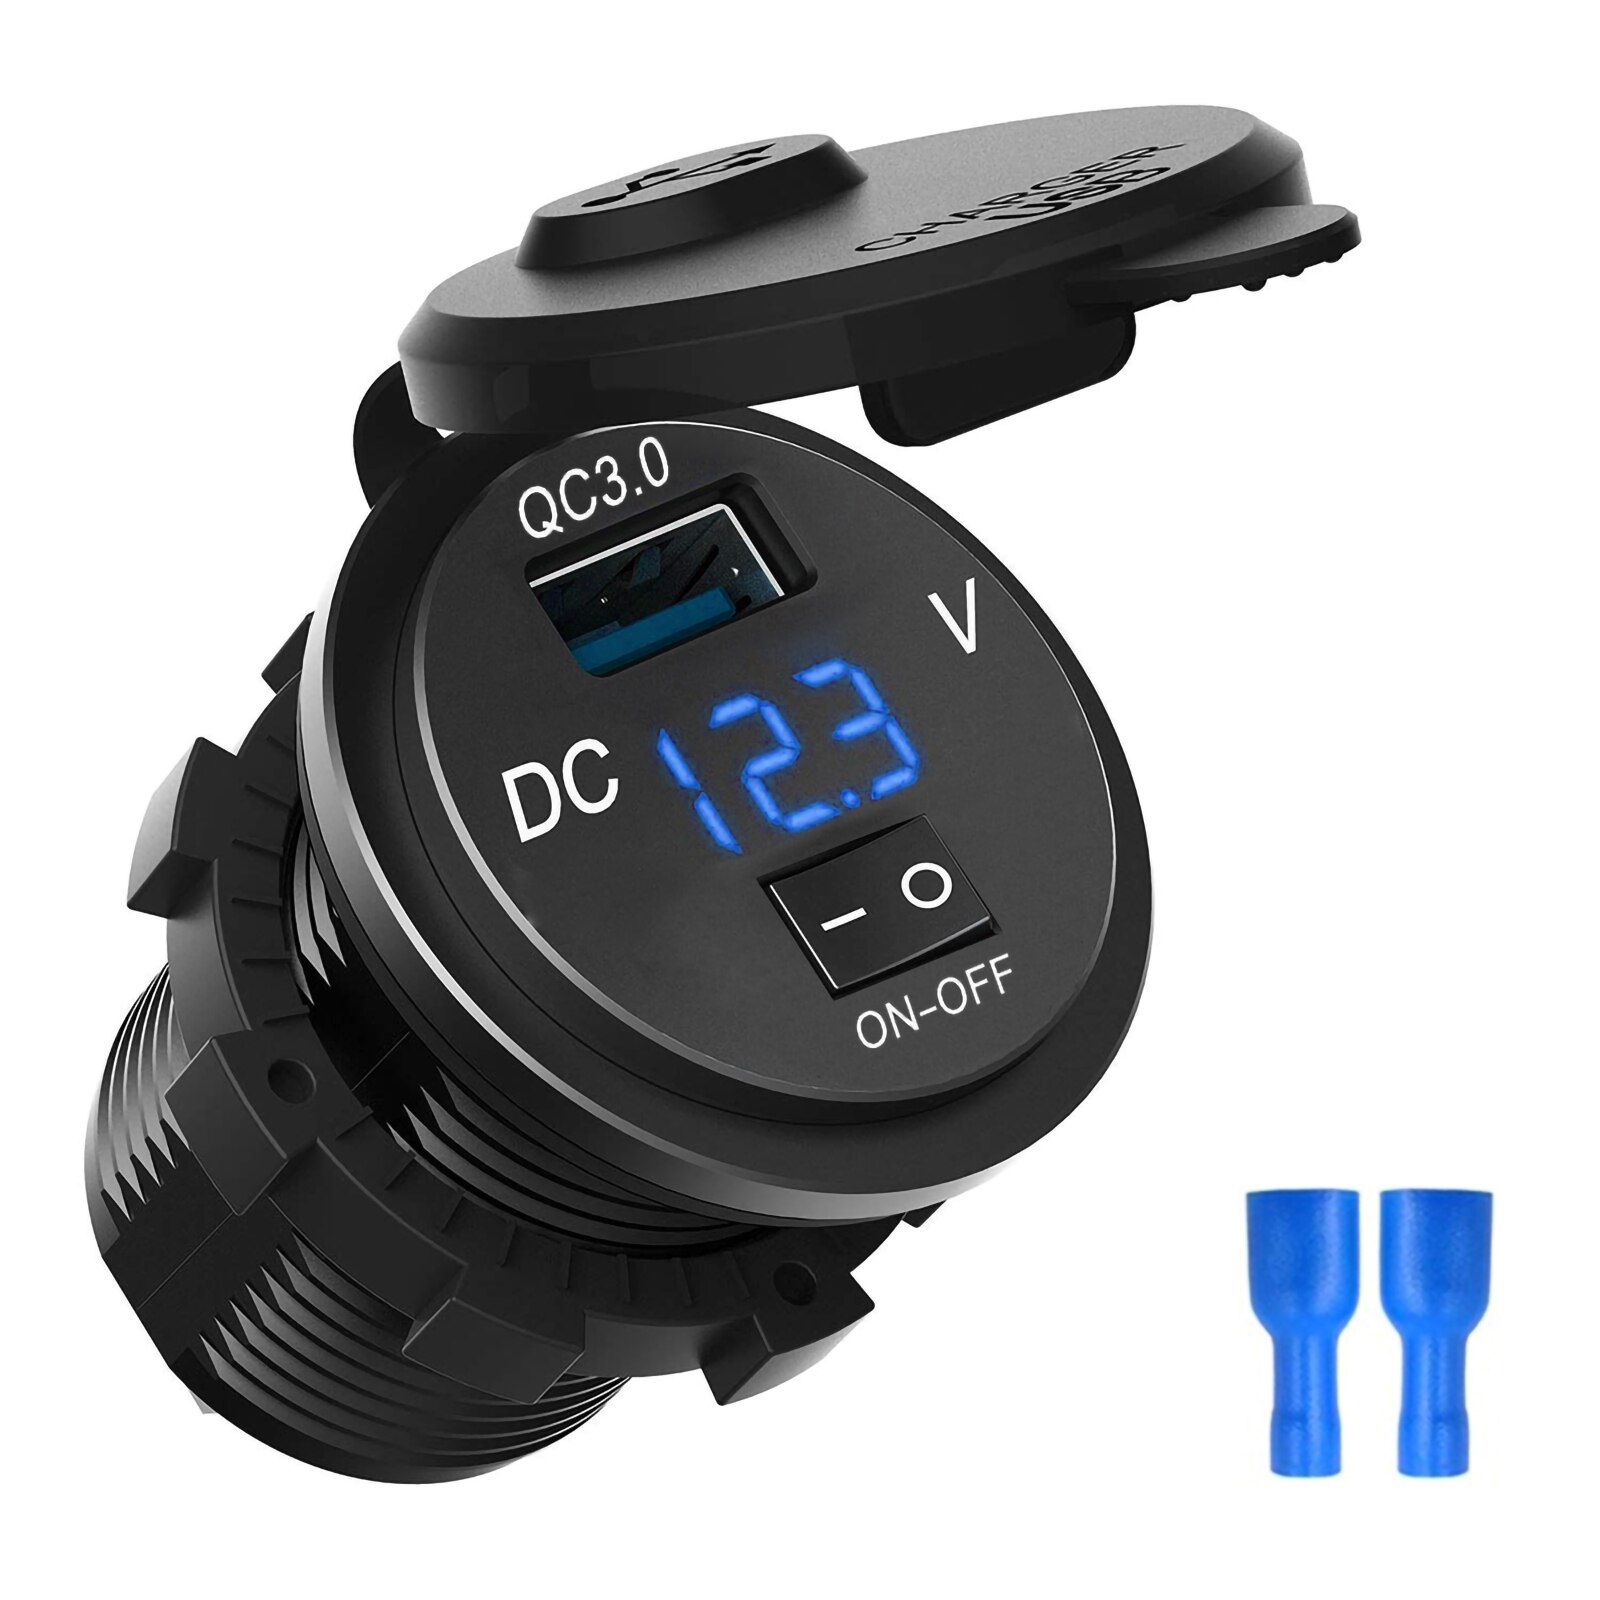 schnell aufladen 3,0 USB Auto Ladegerät Steckdose Digital Anzeige Voltmeter AUF-aus Schalter für Auto Marine ATV Motorrad: Blau